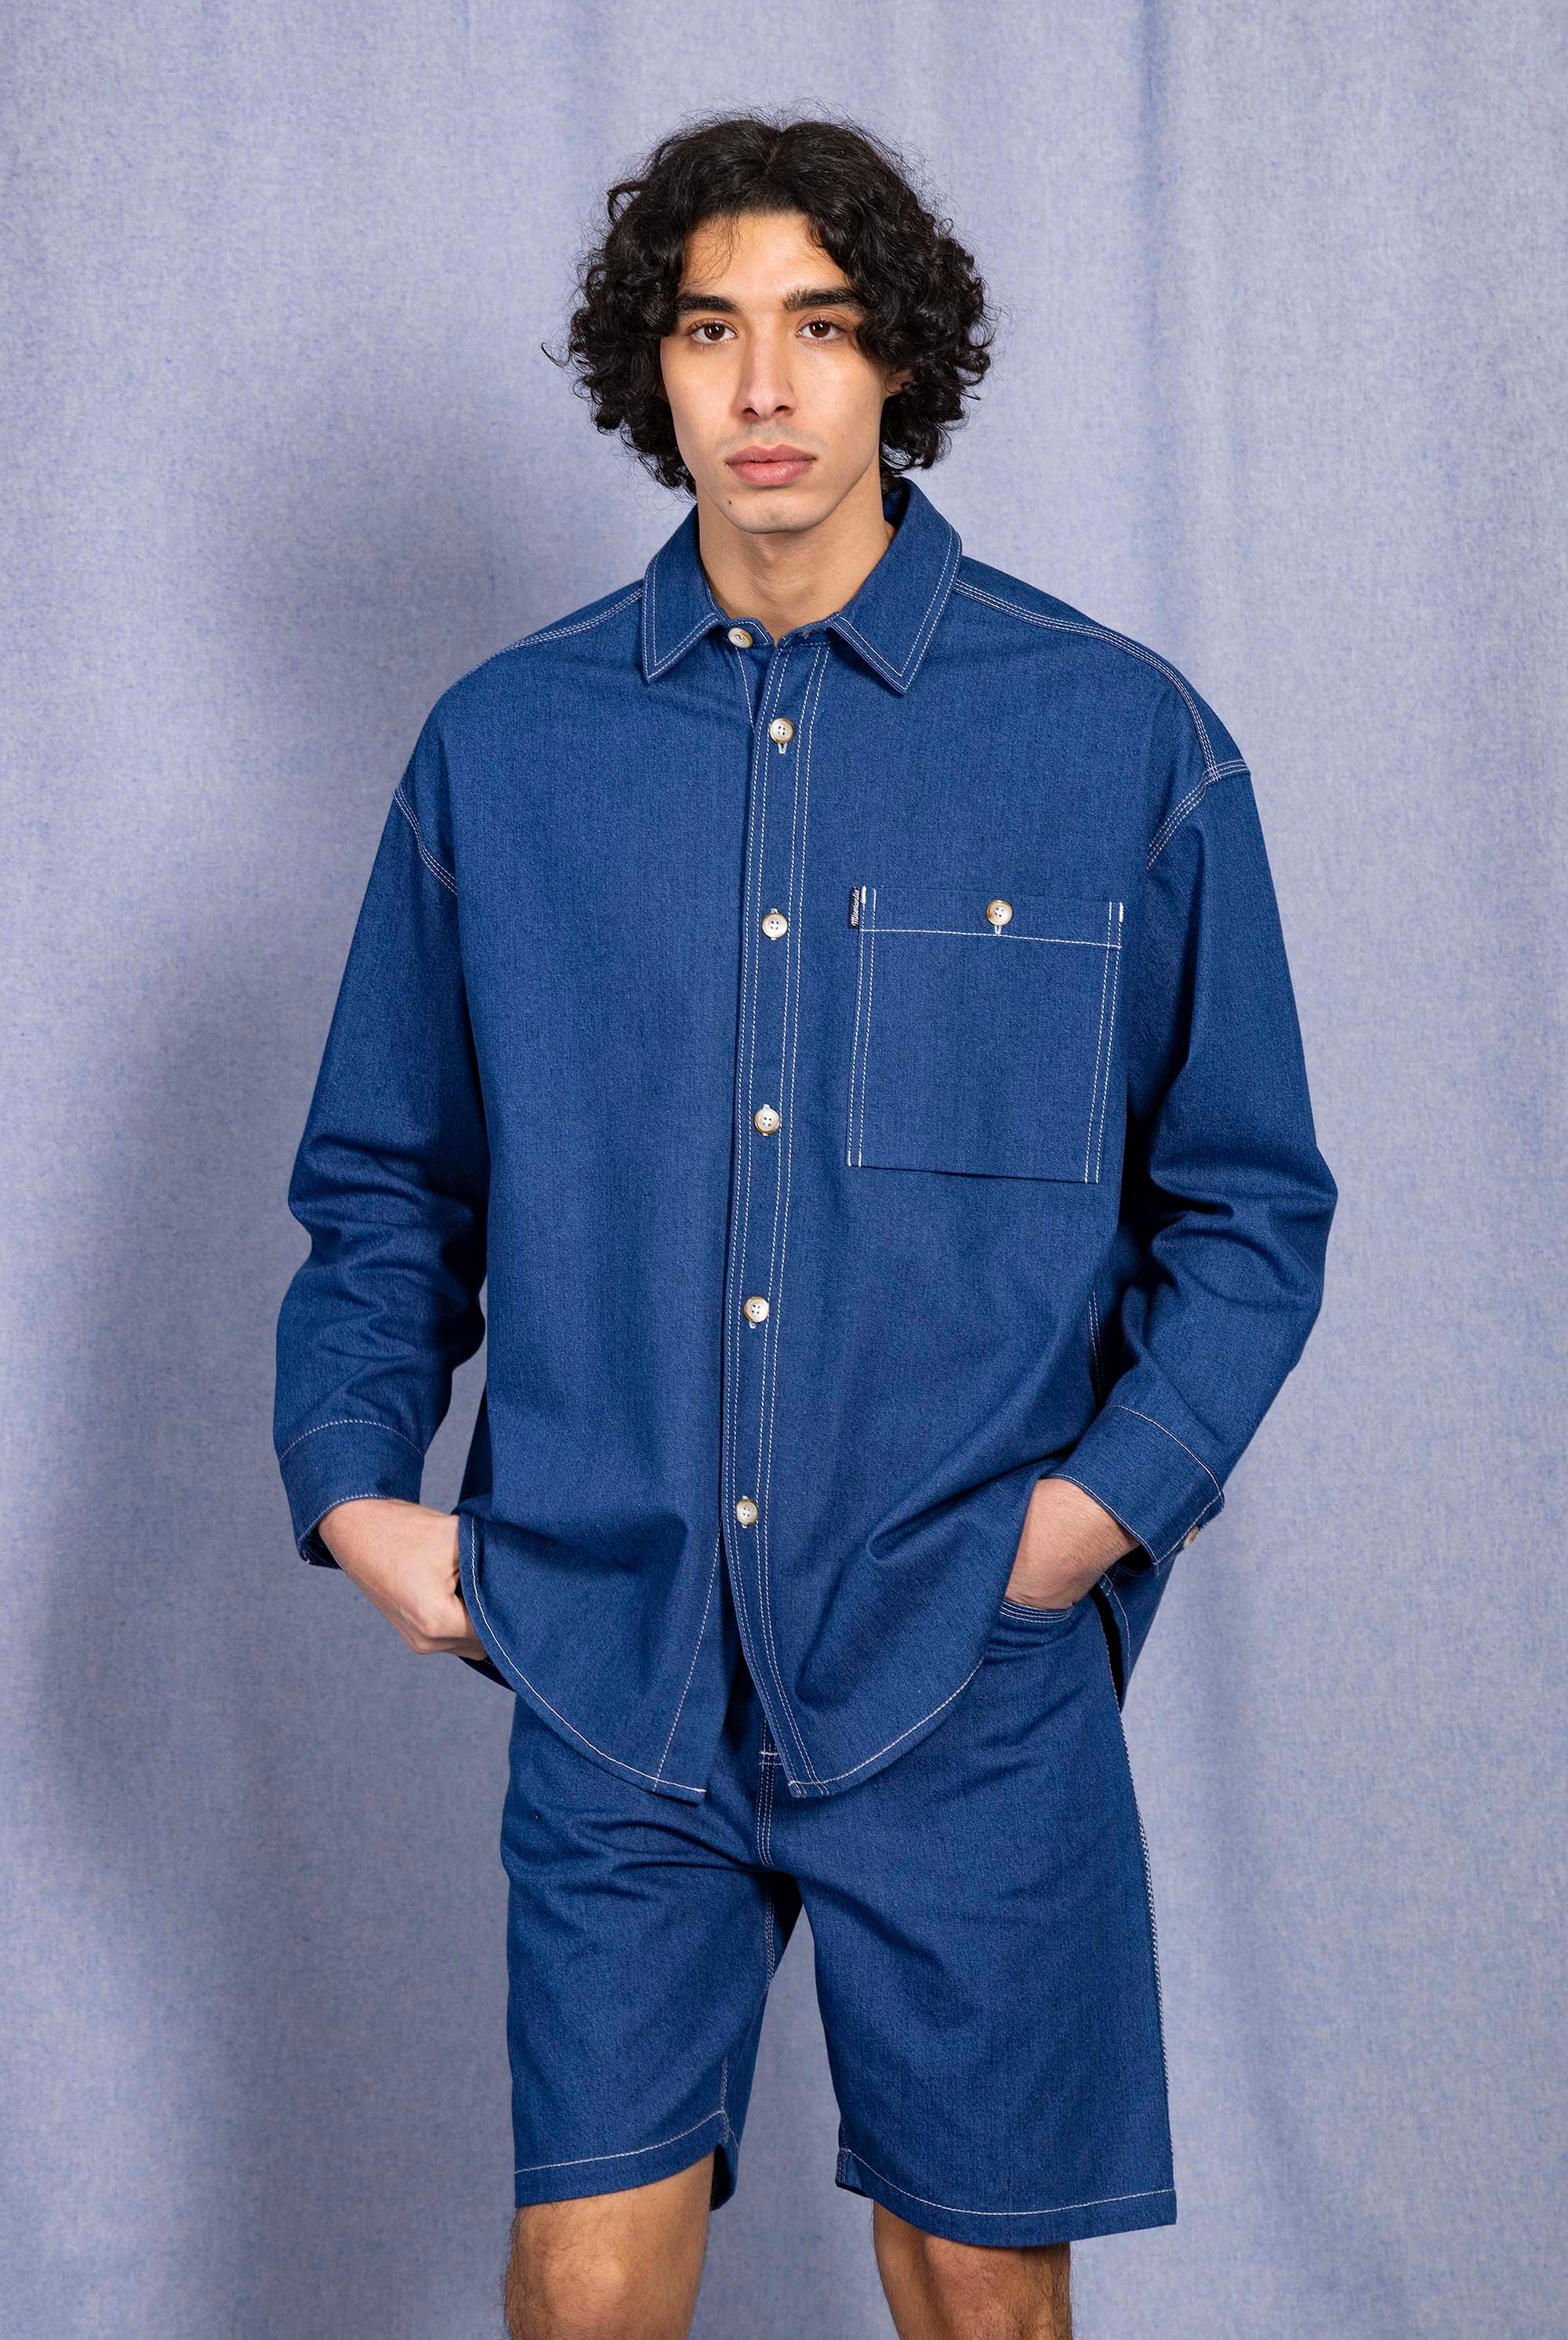 Chemise Pedro Bleu Denim chemise à l'esprit classique, simple et élégant